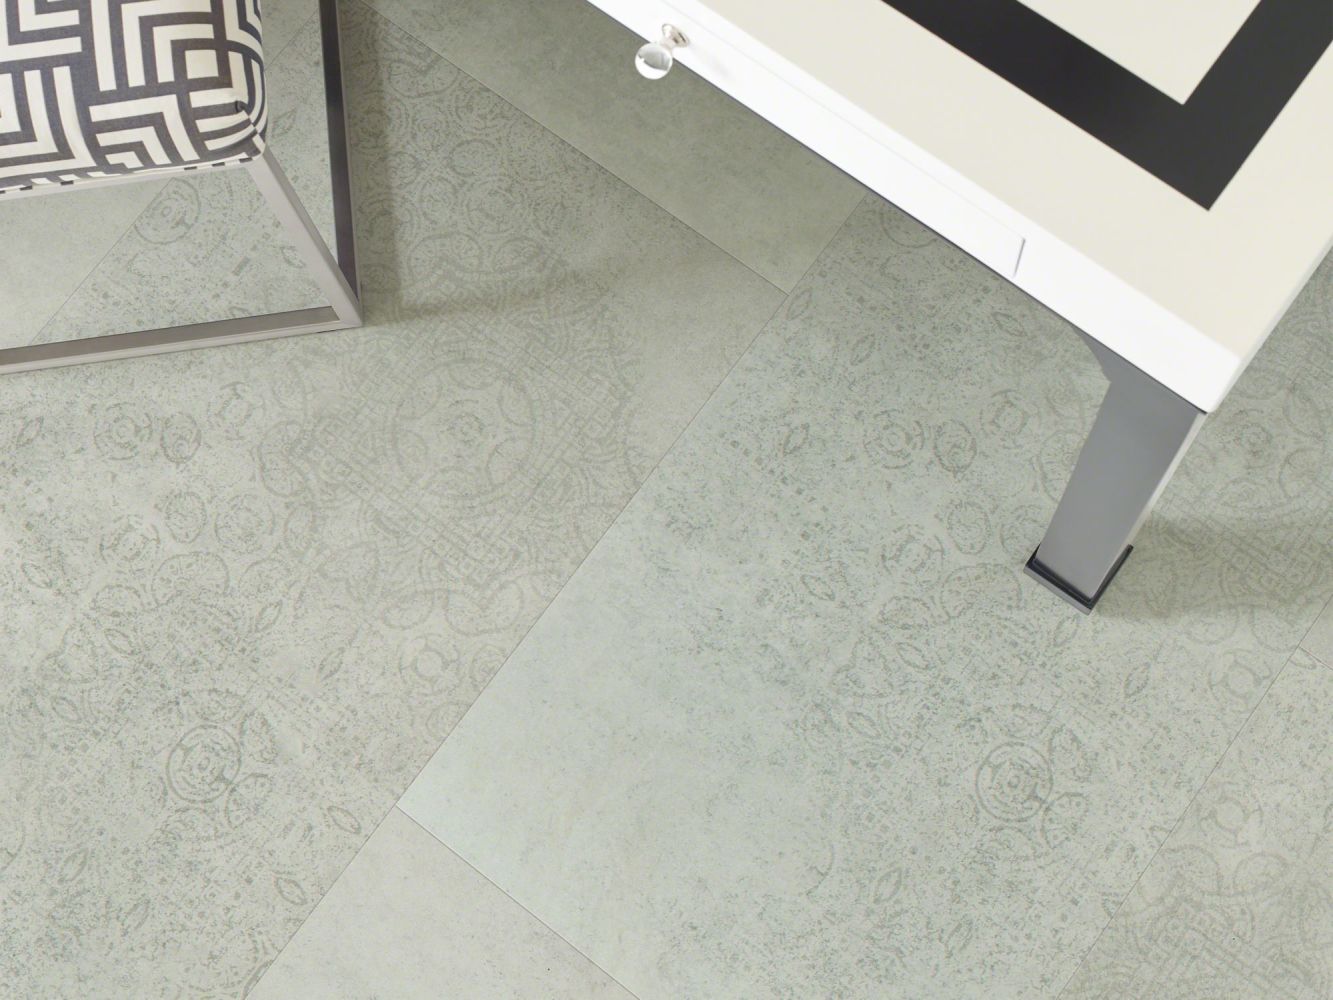 Shaw Floors Resilient Residential Intrepid Tile Plus Cascade 00597_2026V